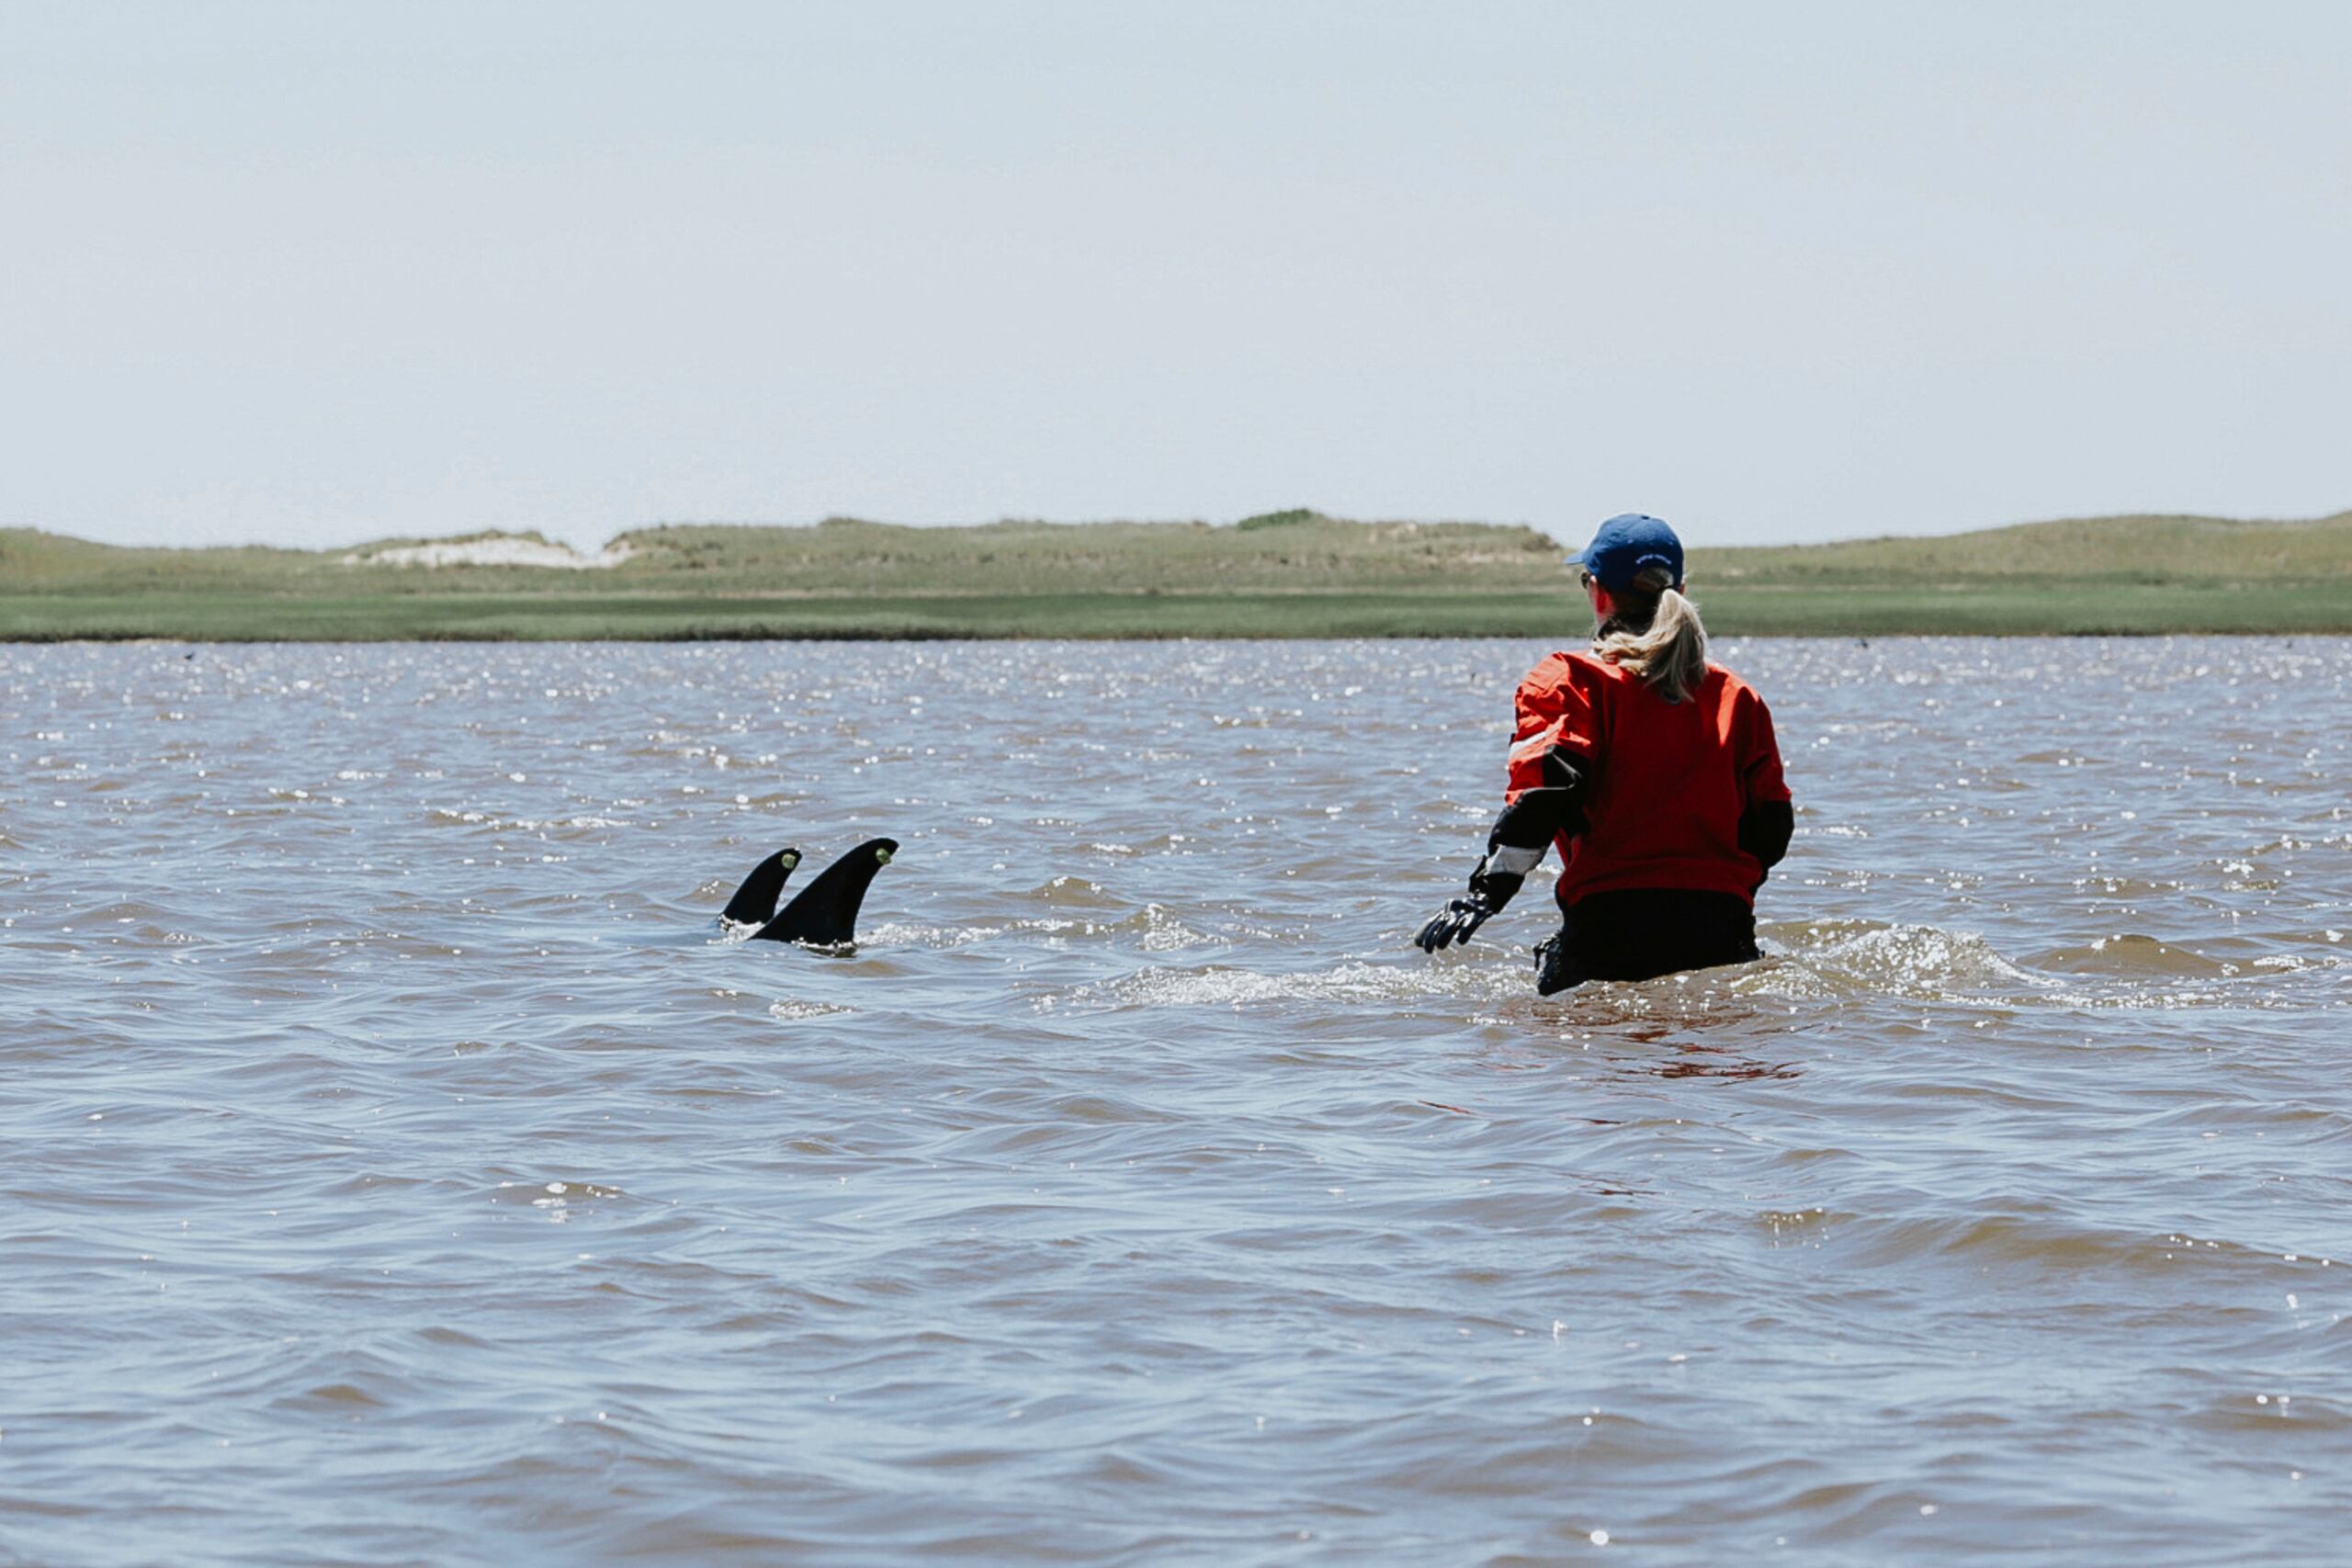 El equipo de la IFAW se encontraba en aguas poco profundas y utilizaba submarinos ultrasonido para llevar a los delfines de regreso a aguas más profundas.